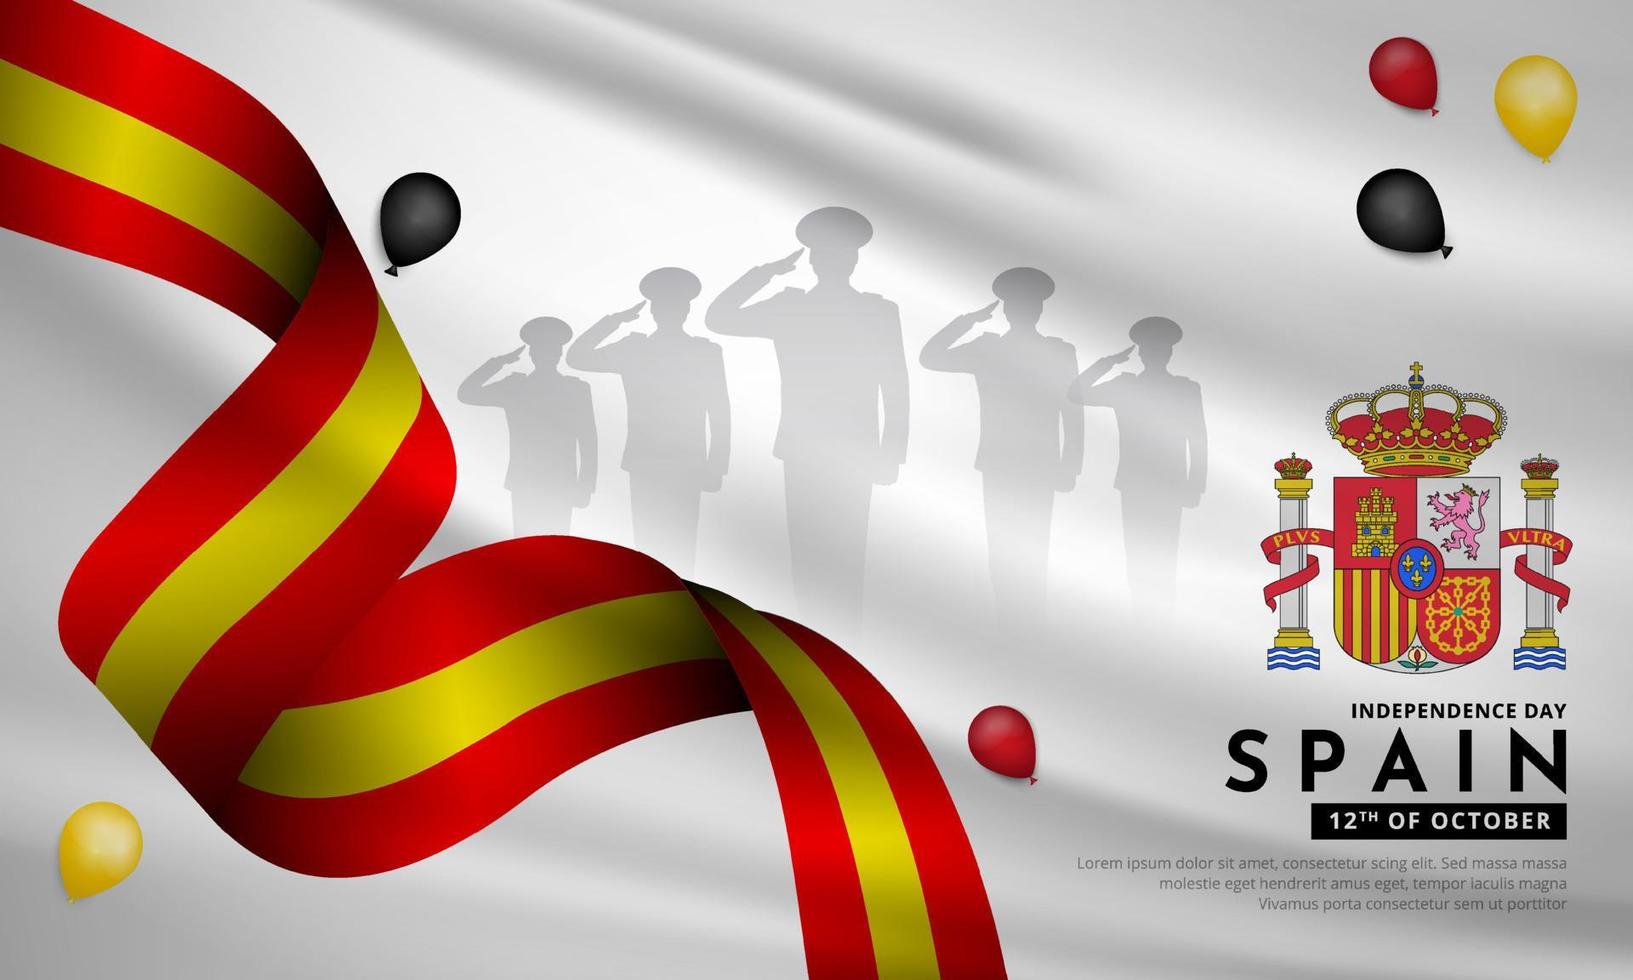 feier spanien republik tag hintergrunddesign mit soldatensilhouette und gewellter flagge. spanien unabhängigkeitstag vektor